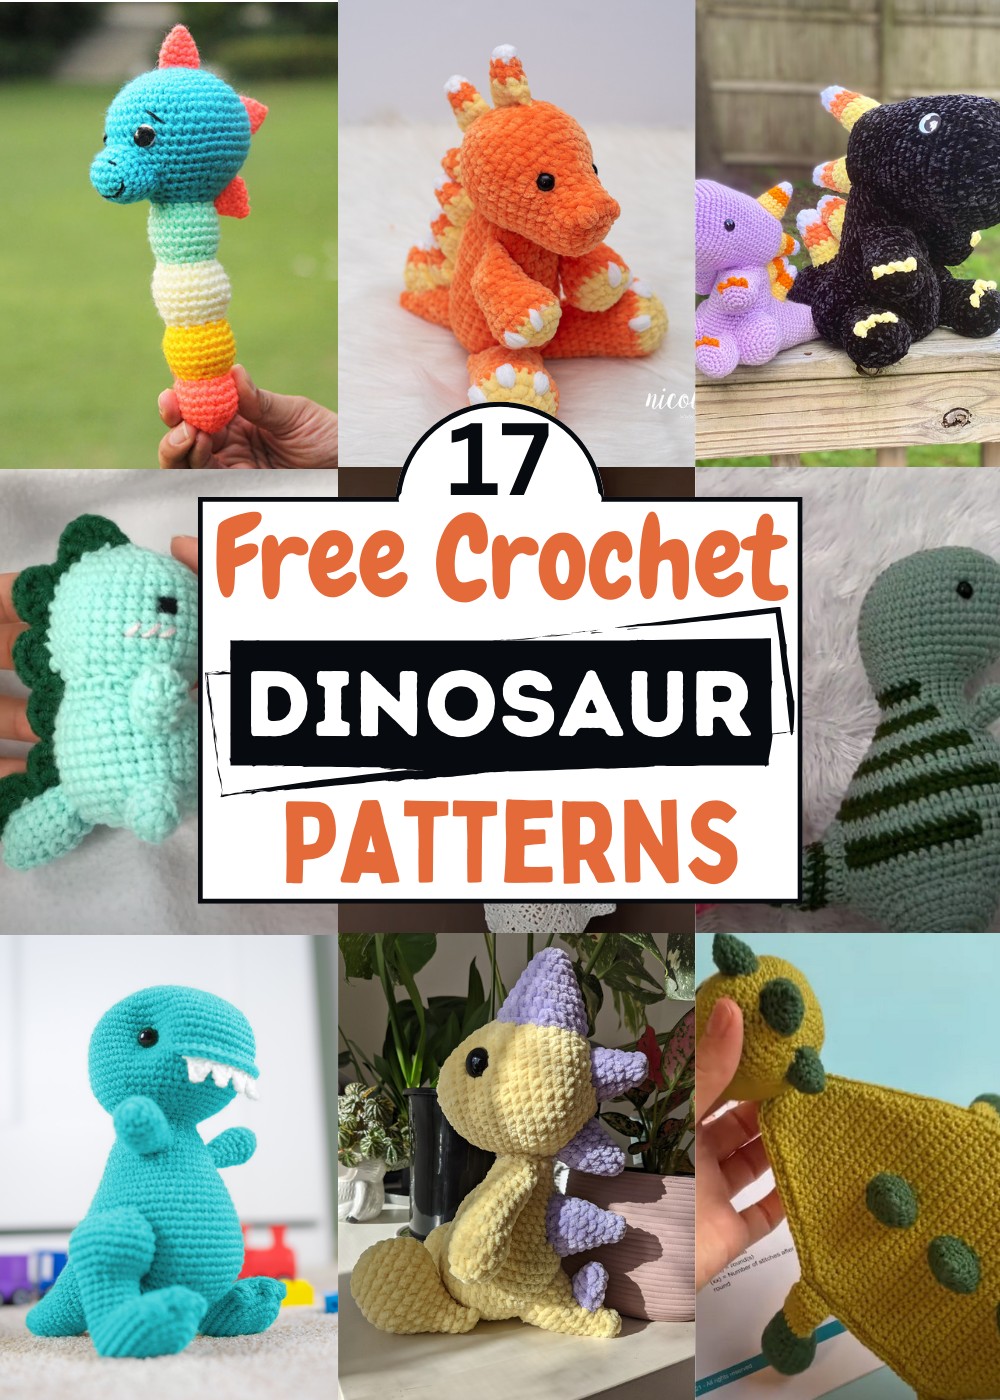 Crochet Dinosaur Patterns